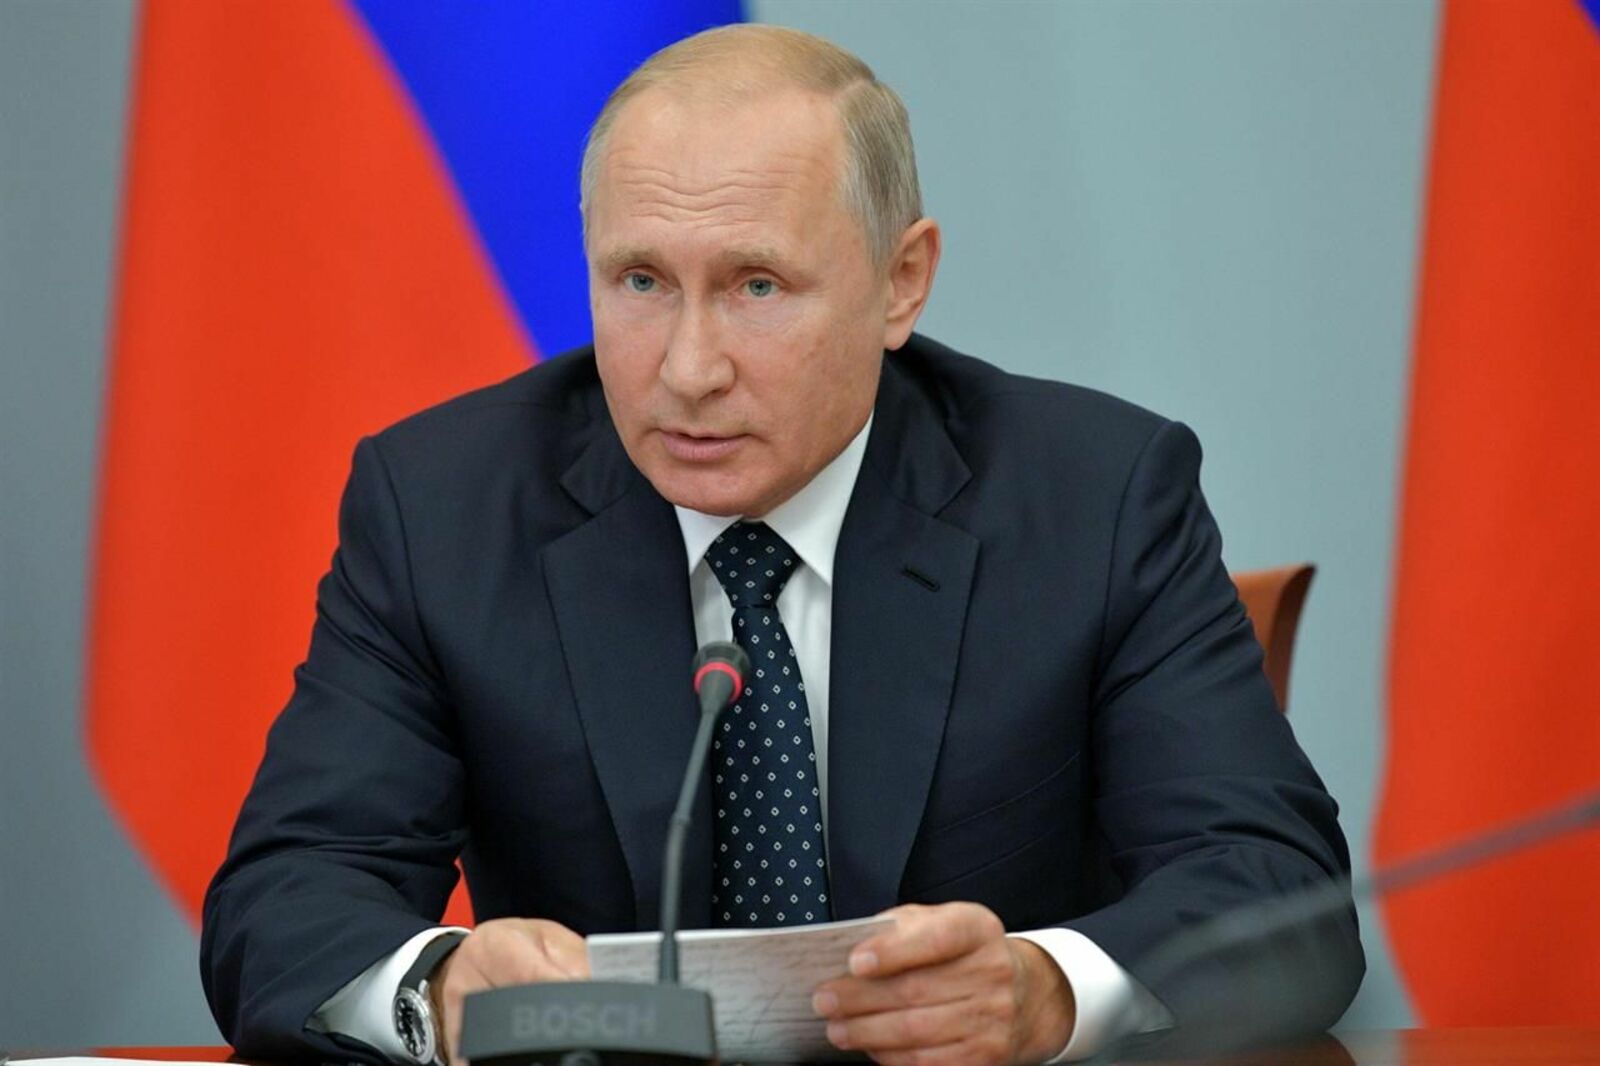 Никто не сможет разрушить традиционные ценности России, заявил Путин